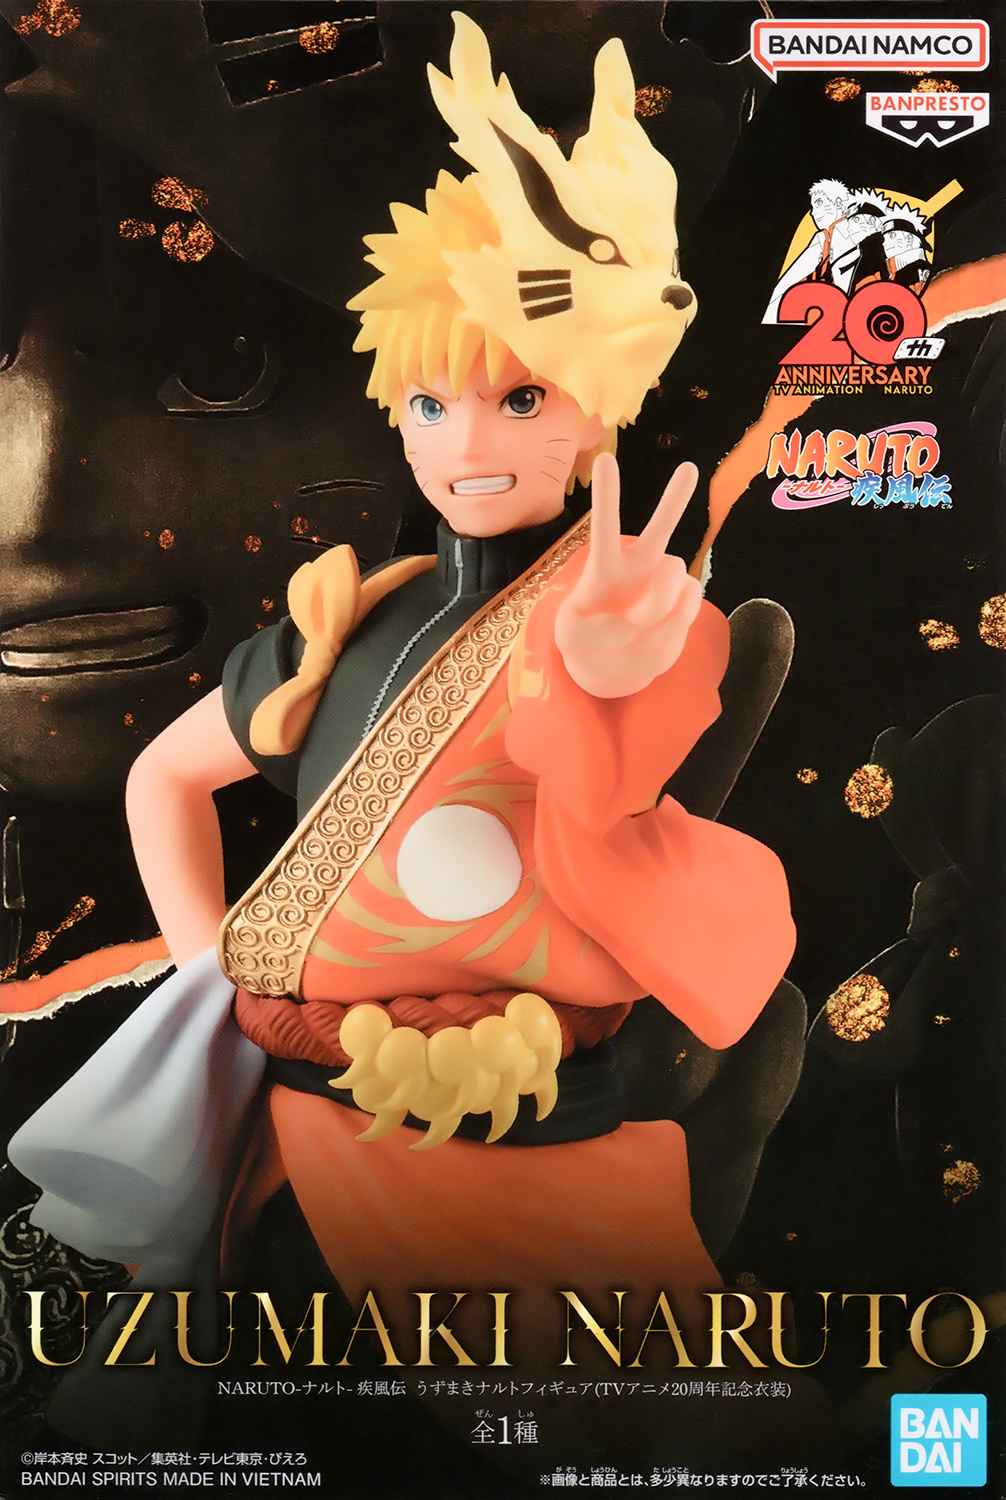 Naruto Uzumaki - Naruto,Anime  Naruto uzumaki, Naruto, Naruto shippuden  anime